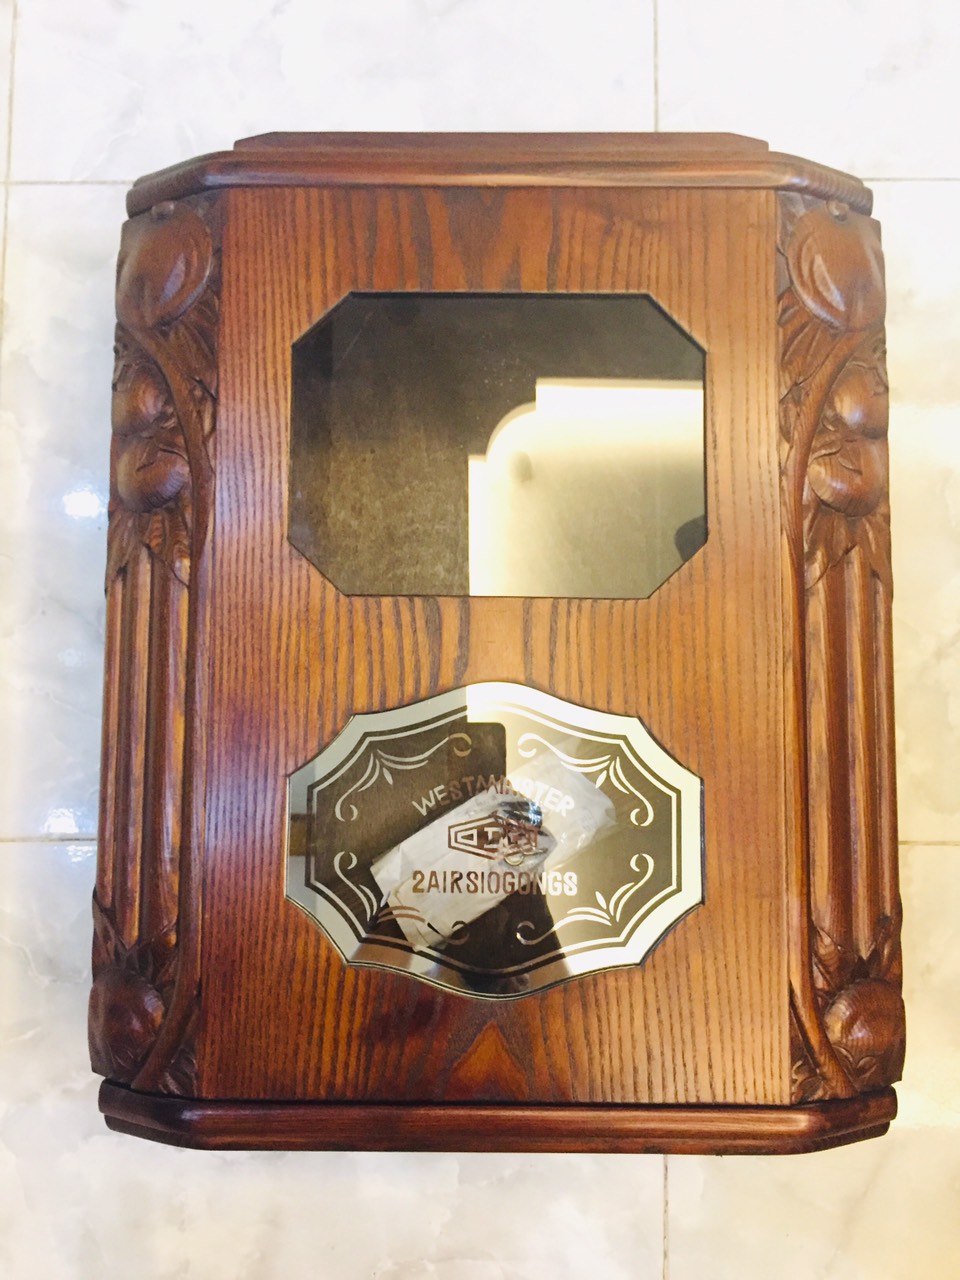 Vỏ thùng đồng hồ ODO, FFR mặt bát giác nằm, làm bằng gỗ sồi - mã số MS500